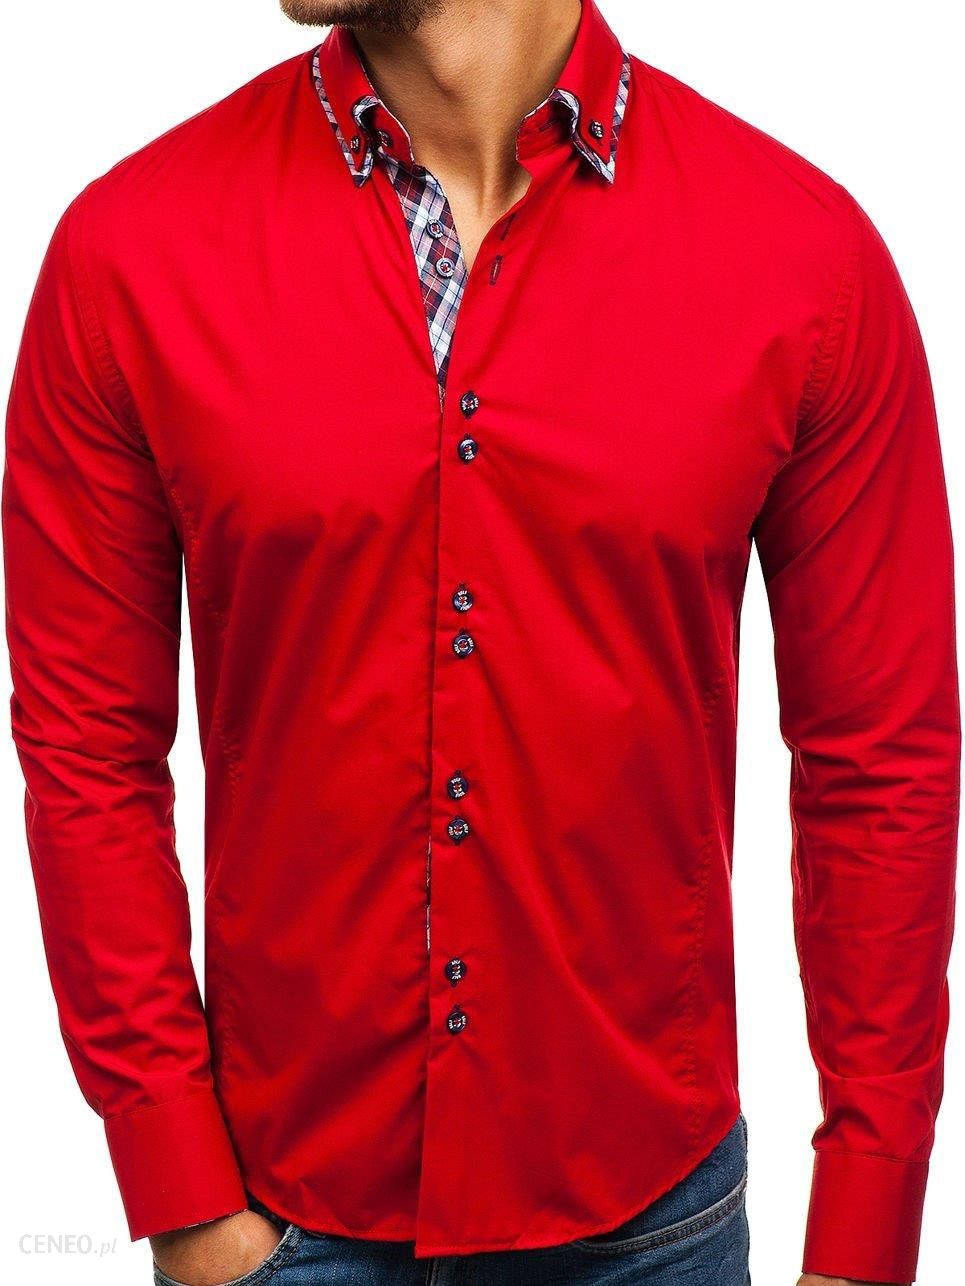 Рубашка мужская MCR красная. Мужская рубашка Bolf. Ярко красная рубашка мужская. Мужская рубашка красного цвета. Красная рубашка текст